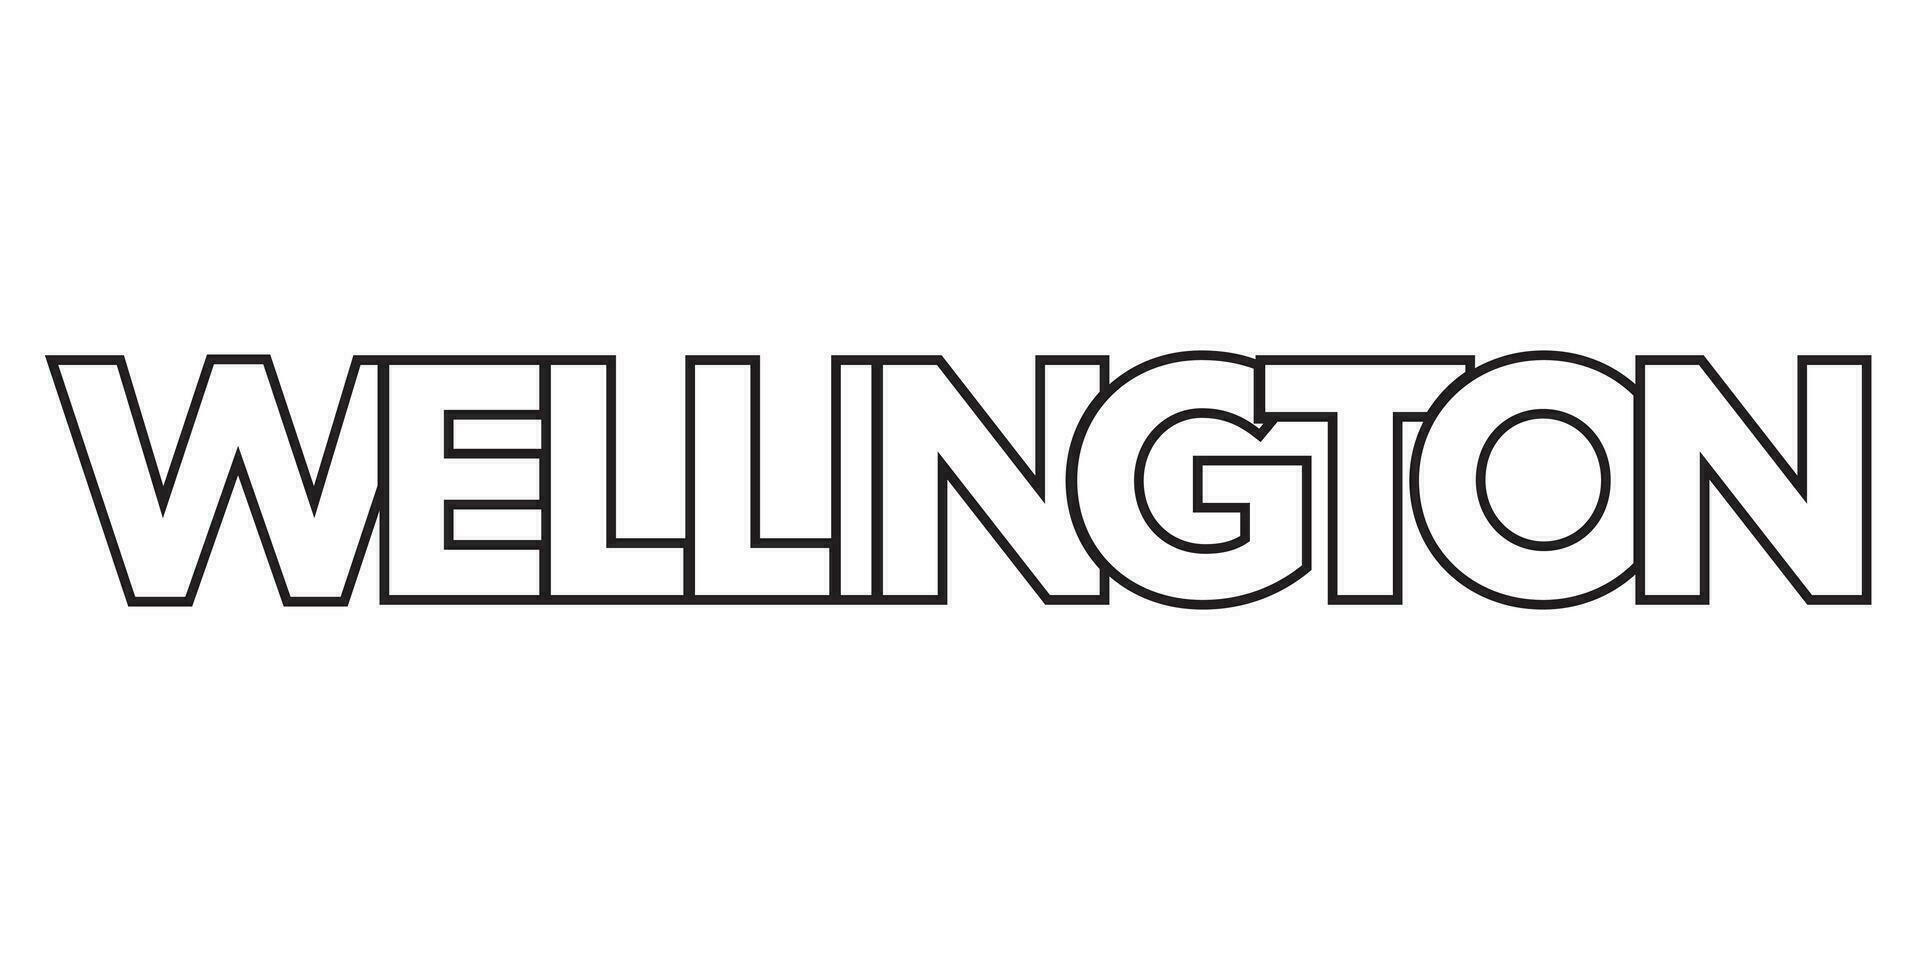 Wellington in de nieuw Zeeland embleem. de ontwerp Kenmerken een meetkundig stijl, vector illustratie met stoutmoedig typografie in een modern lettertype. de grafisch leuze belettering.